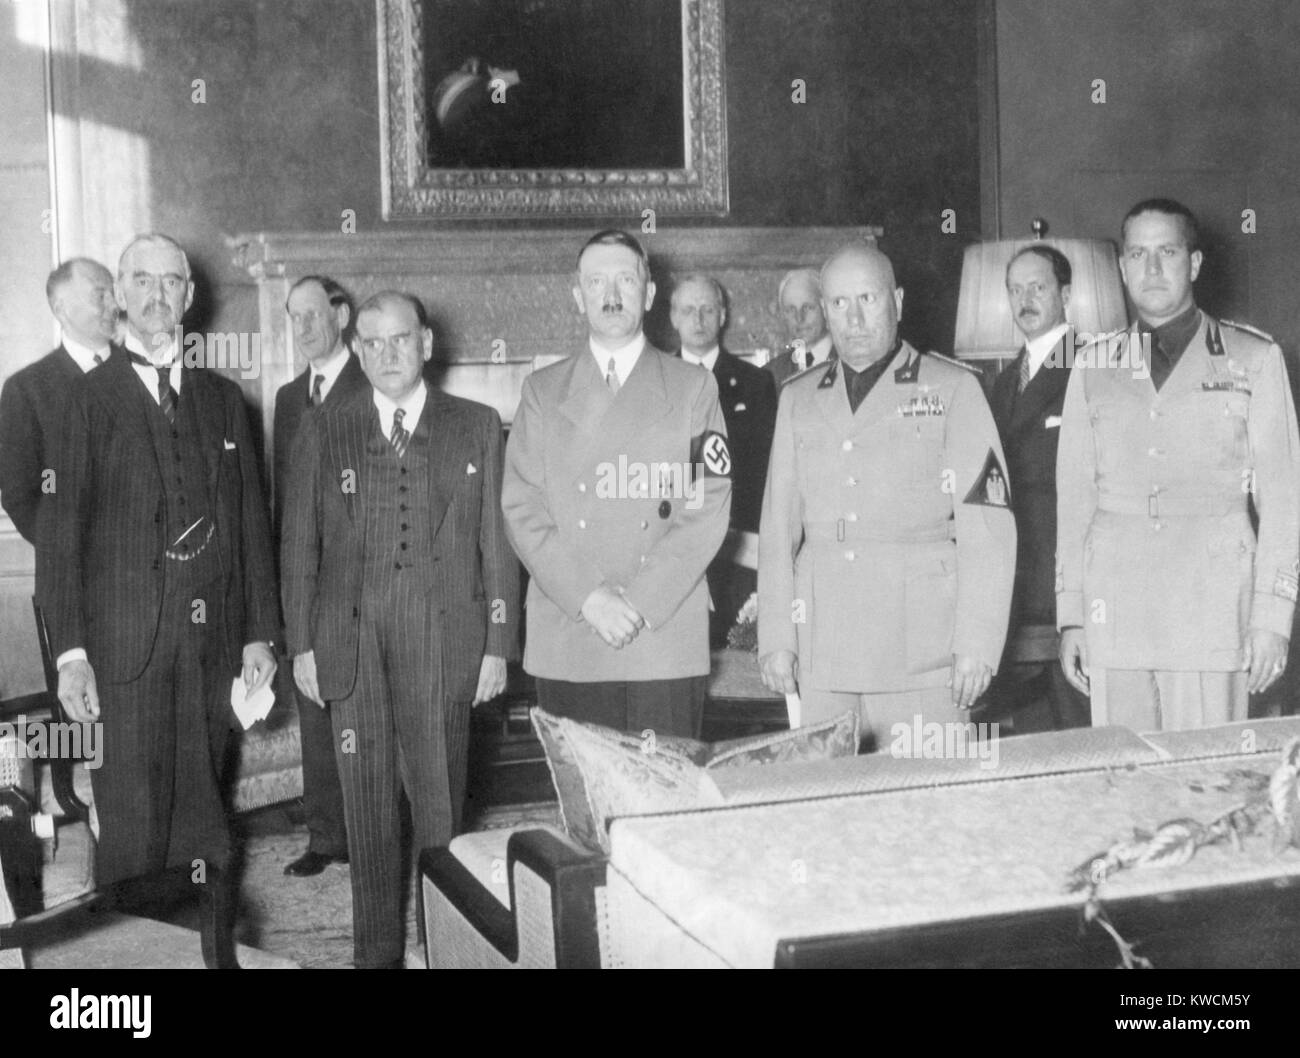 La Conférence de Munich qui cédait les Sudètes tchèque à l'Allemagne. Chamberlain, Daladier, Hitler, Mussolini et Ciano sont présentées avant la signature. 30 septembre, 1938. - BSLOC  2014 (14 11) Banque D'Images